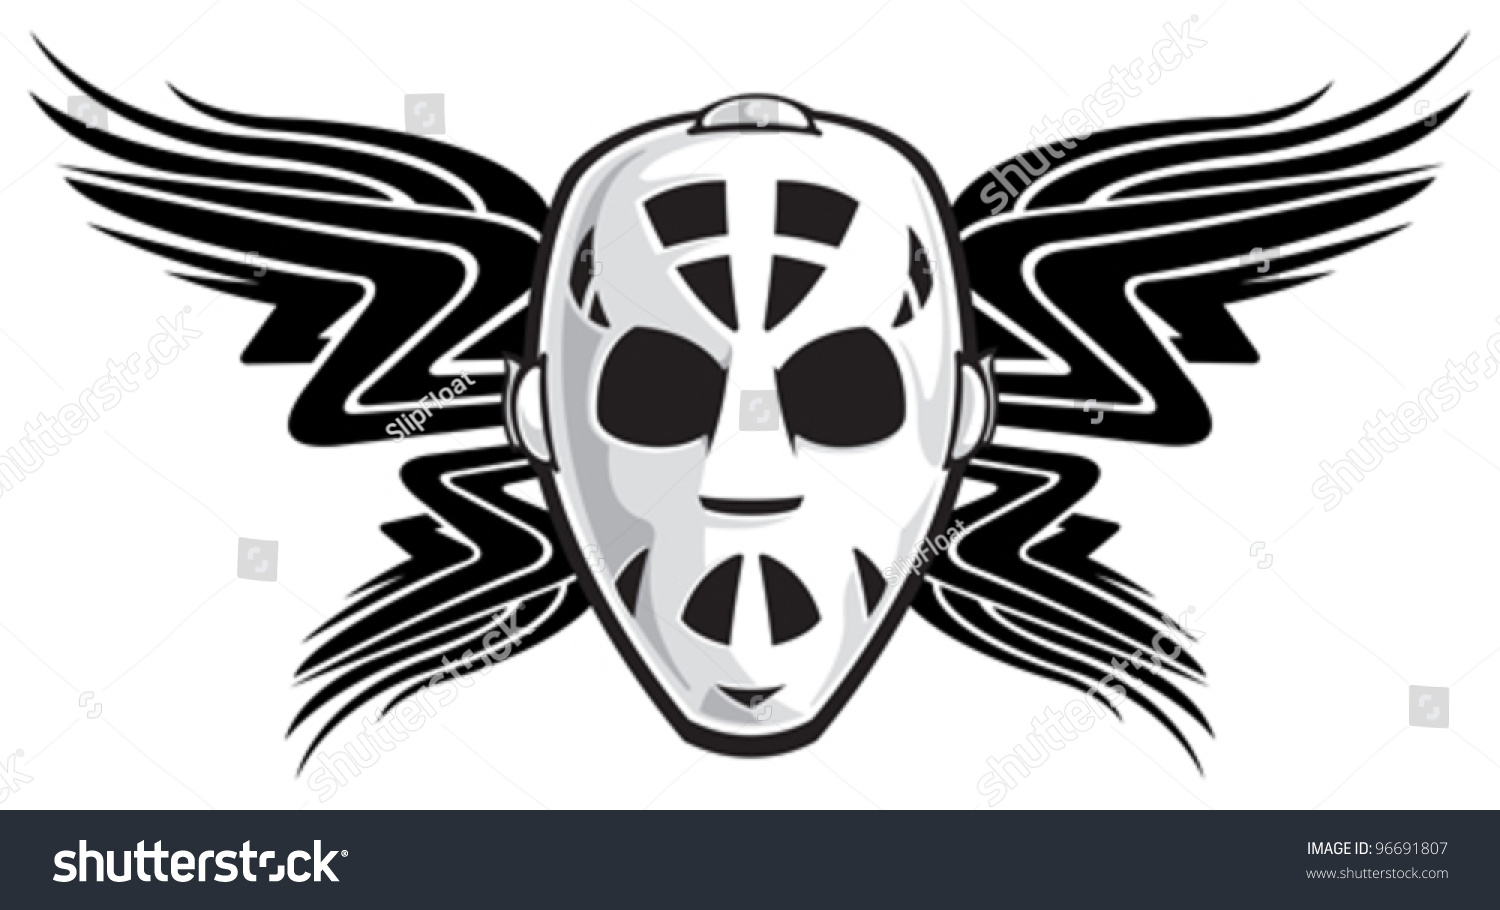 Goalie Mask Stock Vector 96691807 : Shutterstock